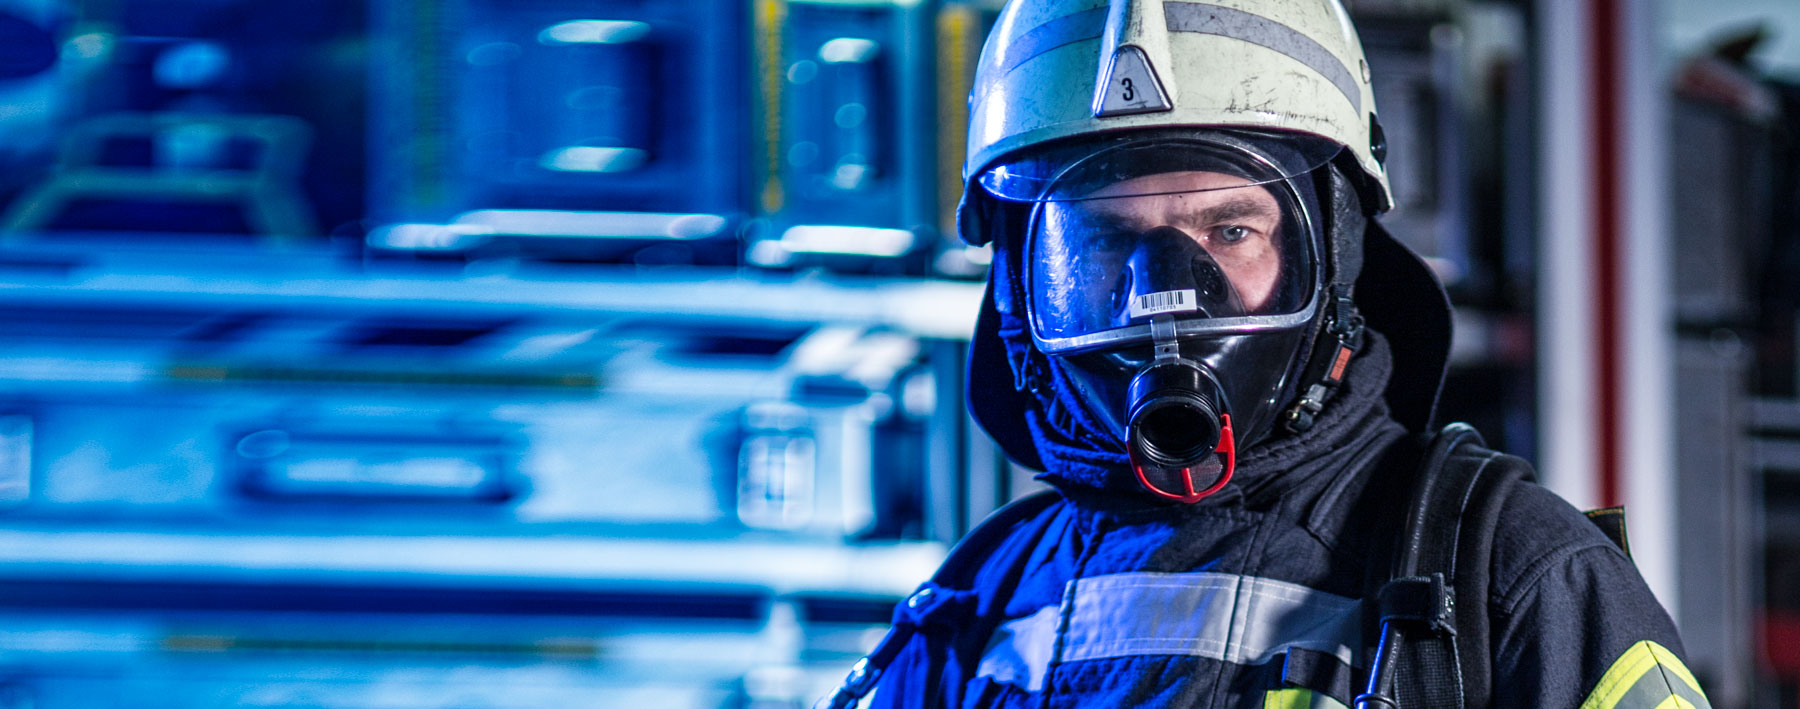 Feuerwehrmann mit Atemschutzmaske vor unscharfem Hintergrund